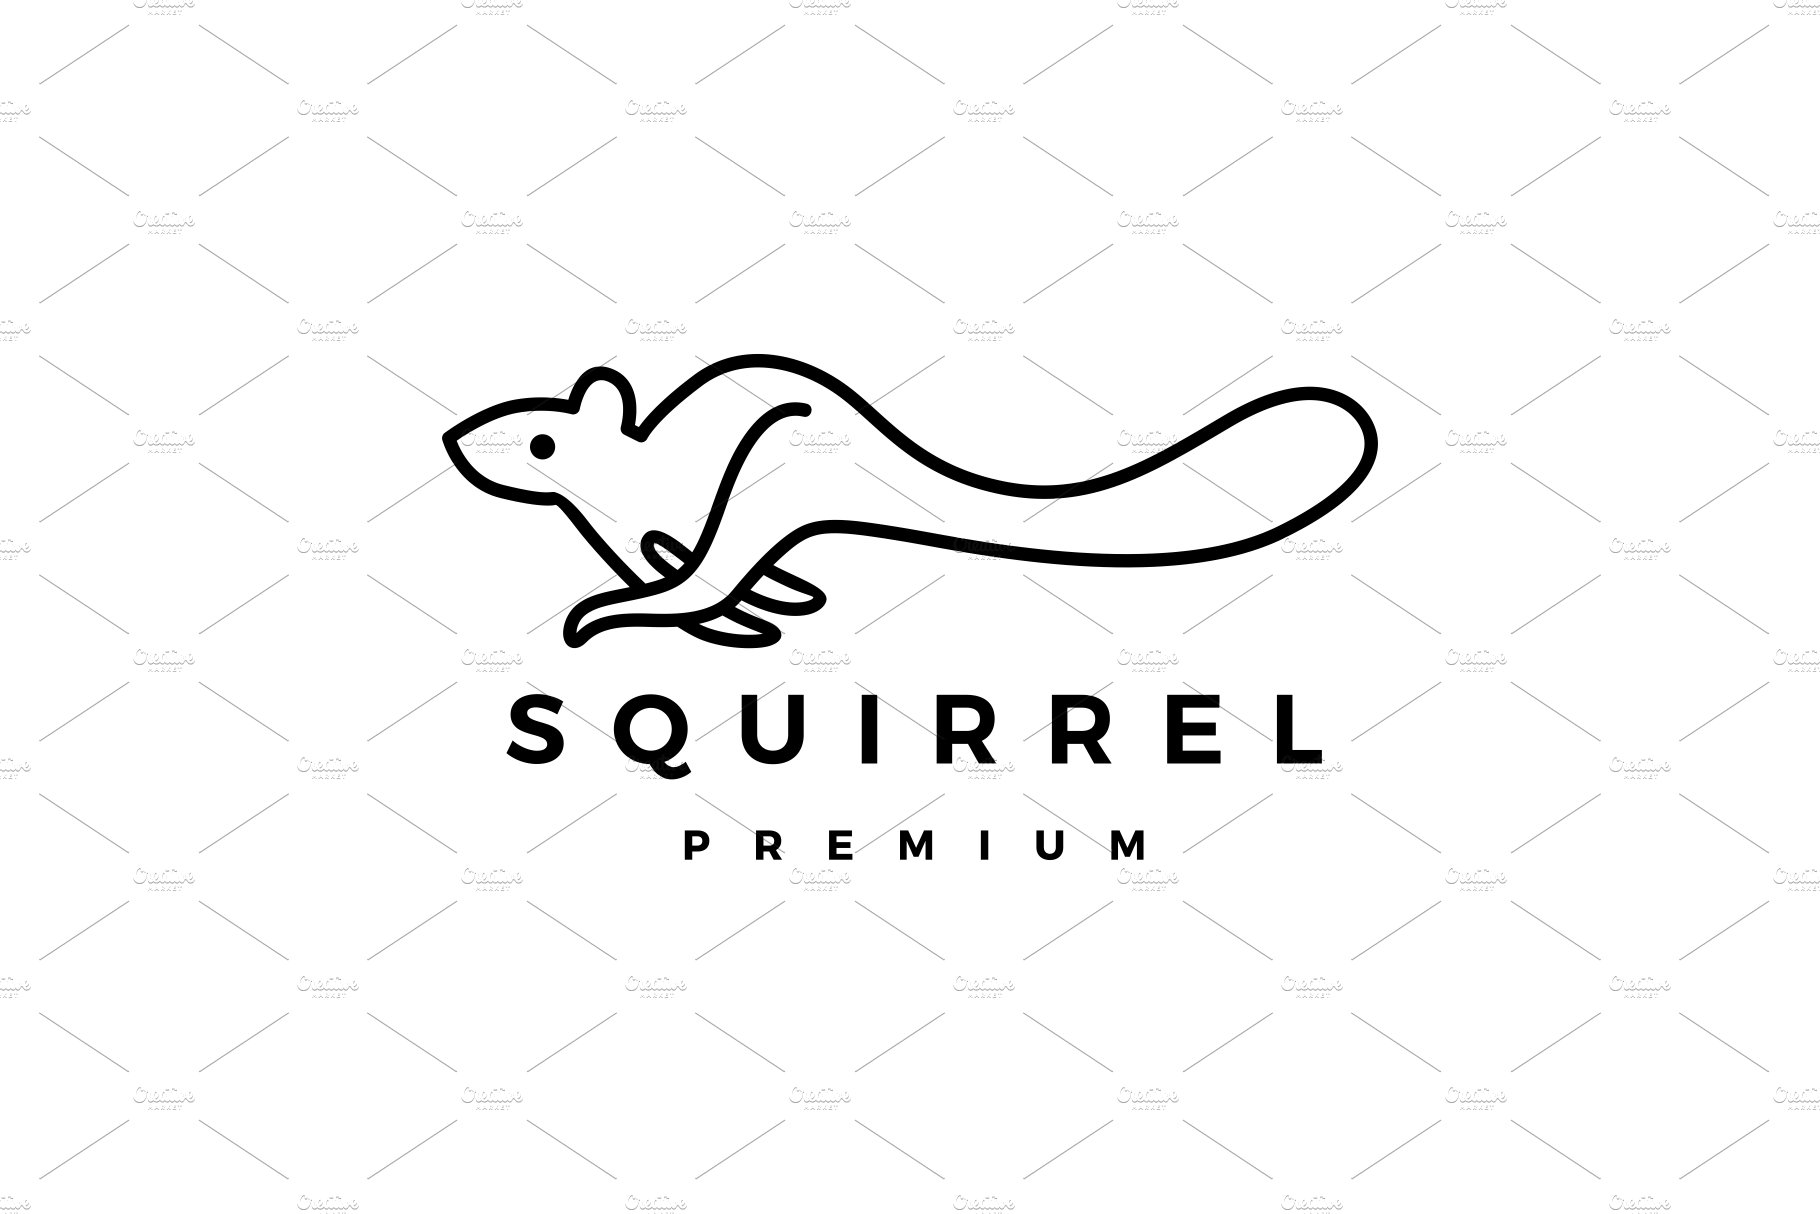 squirrel logo vector icon cover image.